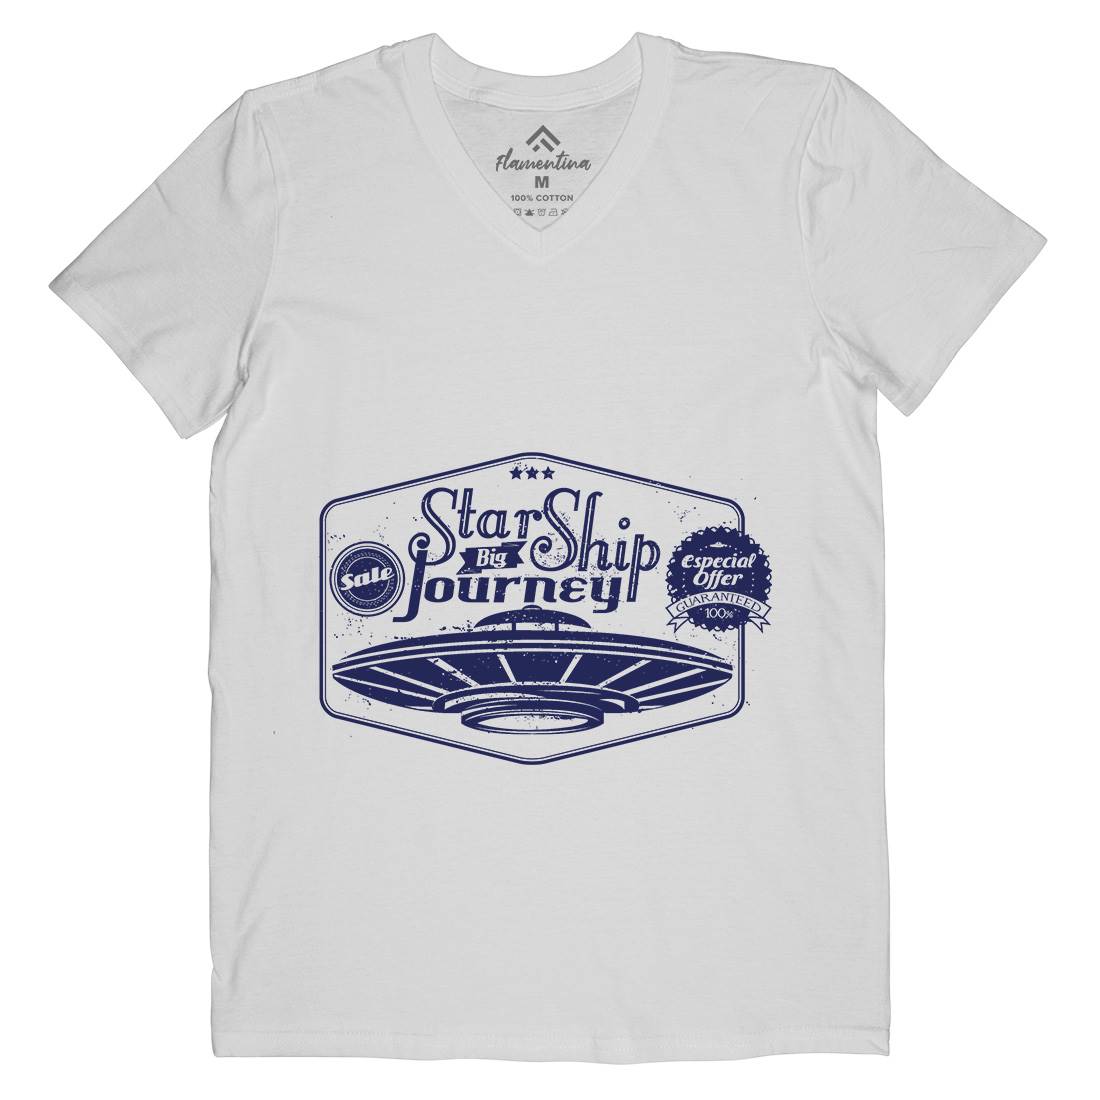 Star Ship Mens V-Neck T-Shirt Space A956